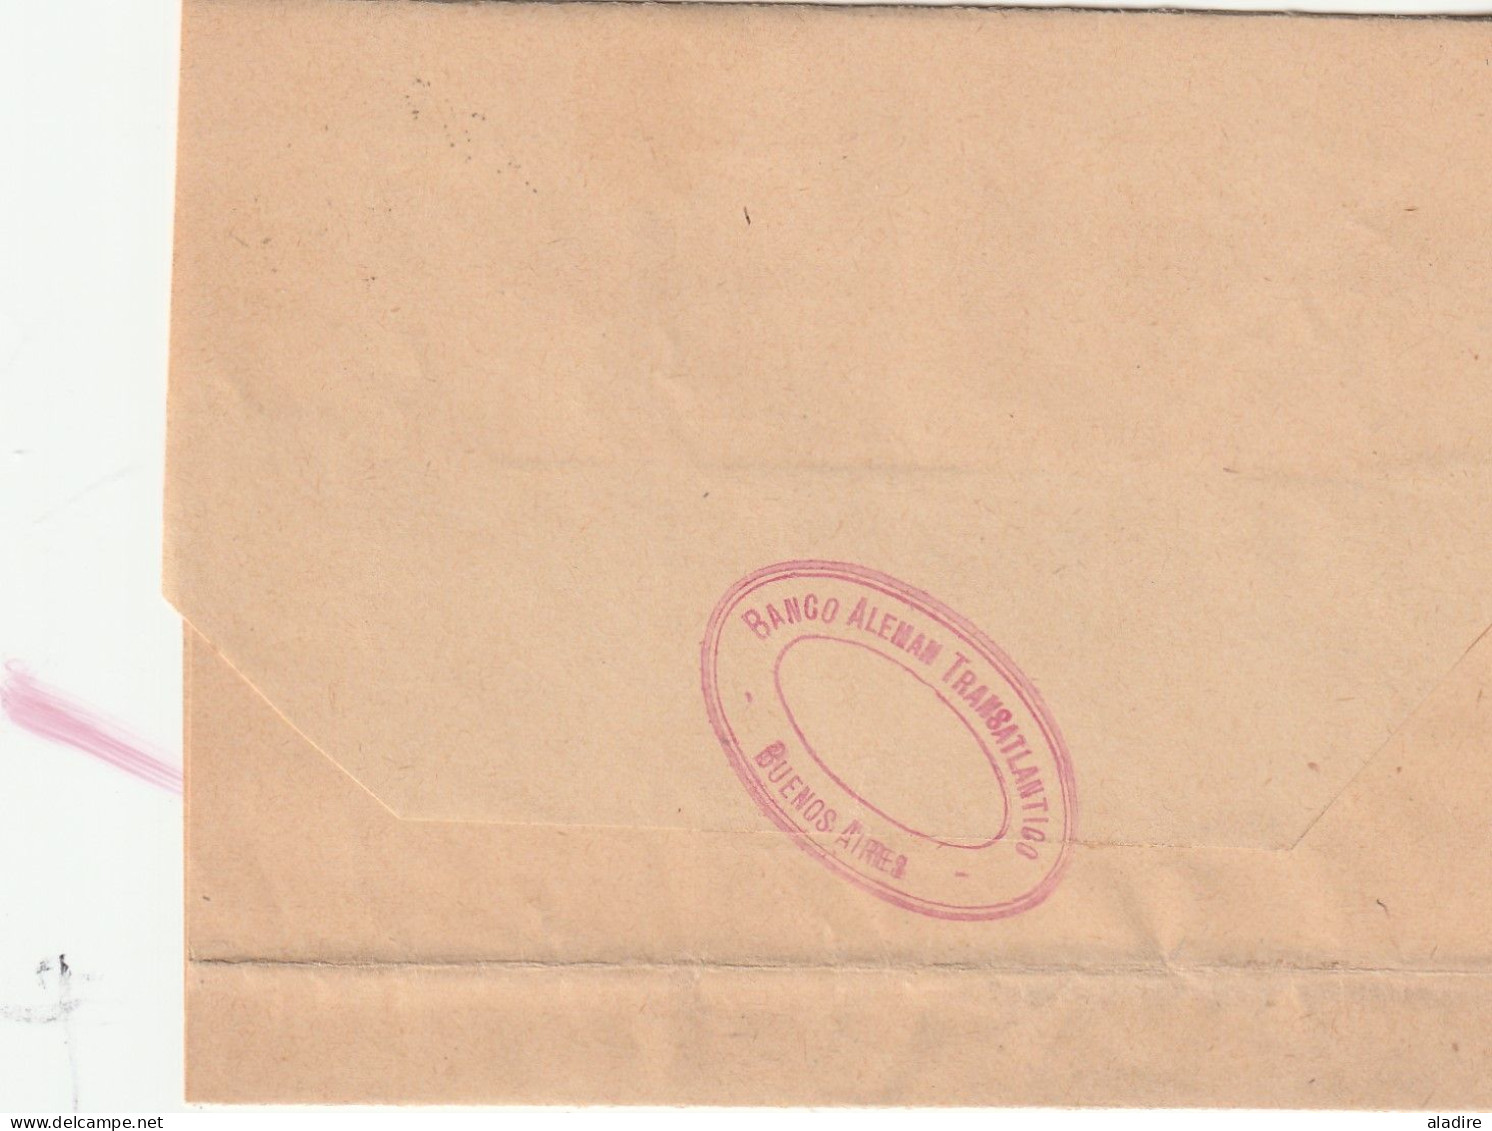 1858 /1939 - collection de 9 lettres, entiers et enveloppes (+ 3 en cadeau) - lignes maritimes françaises ARGENTINE